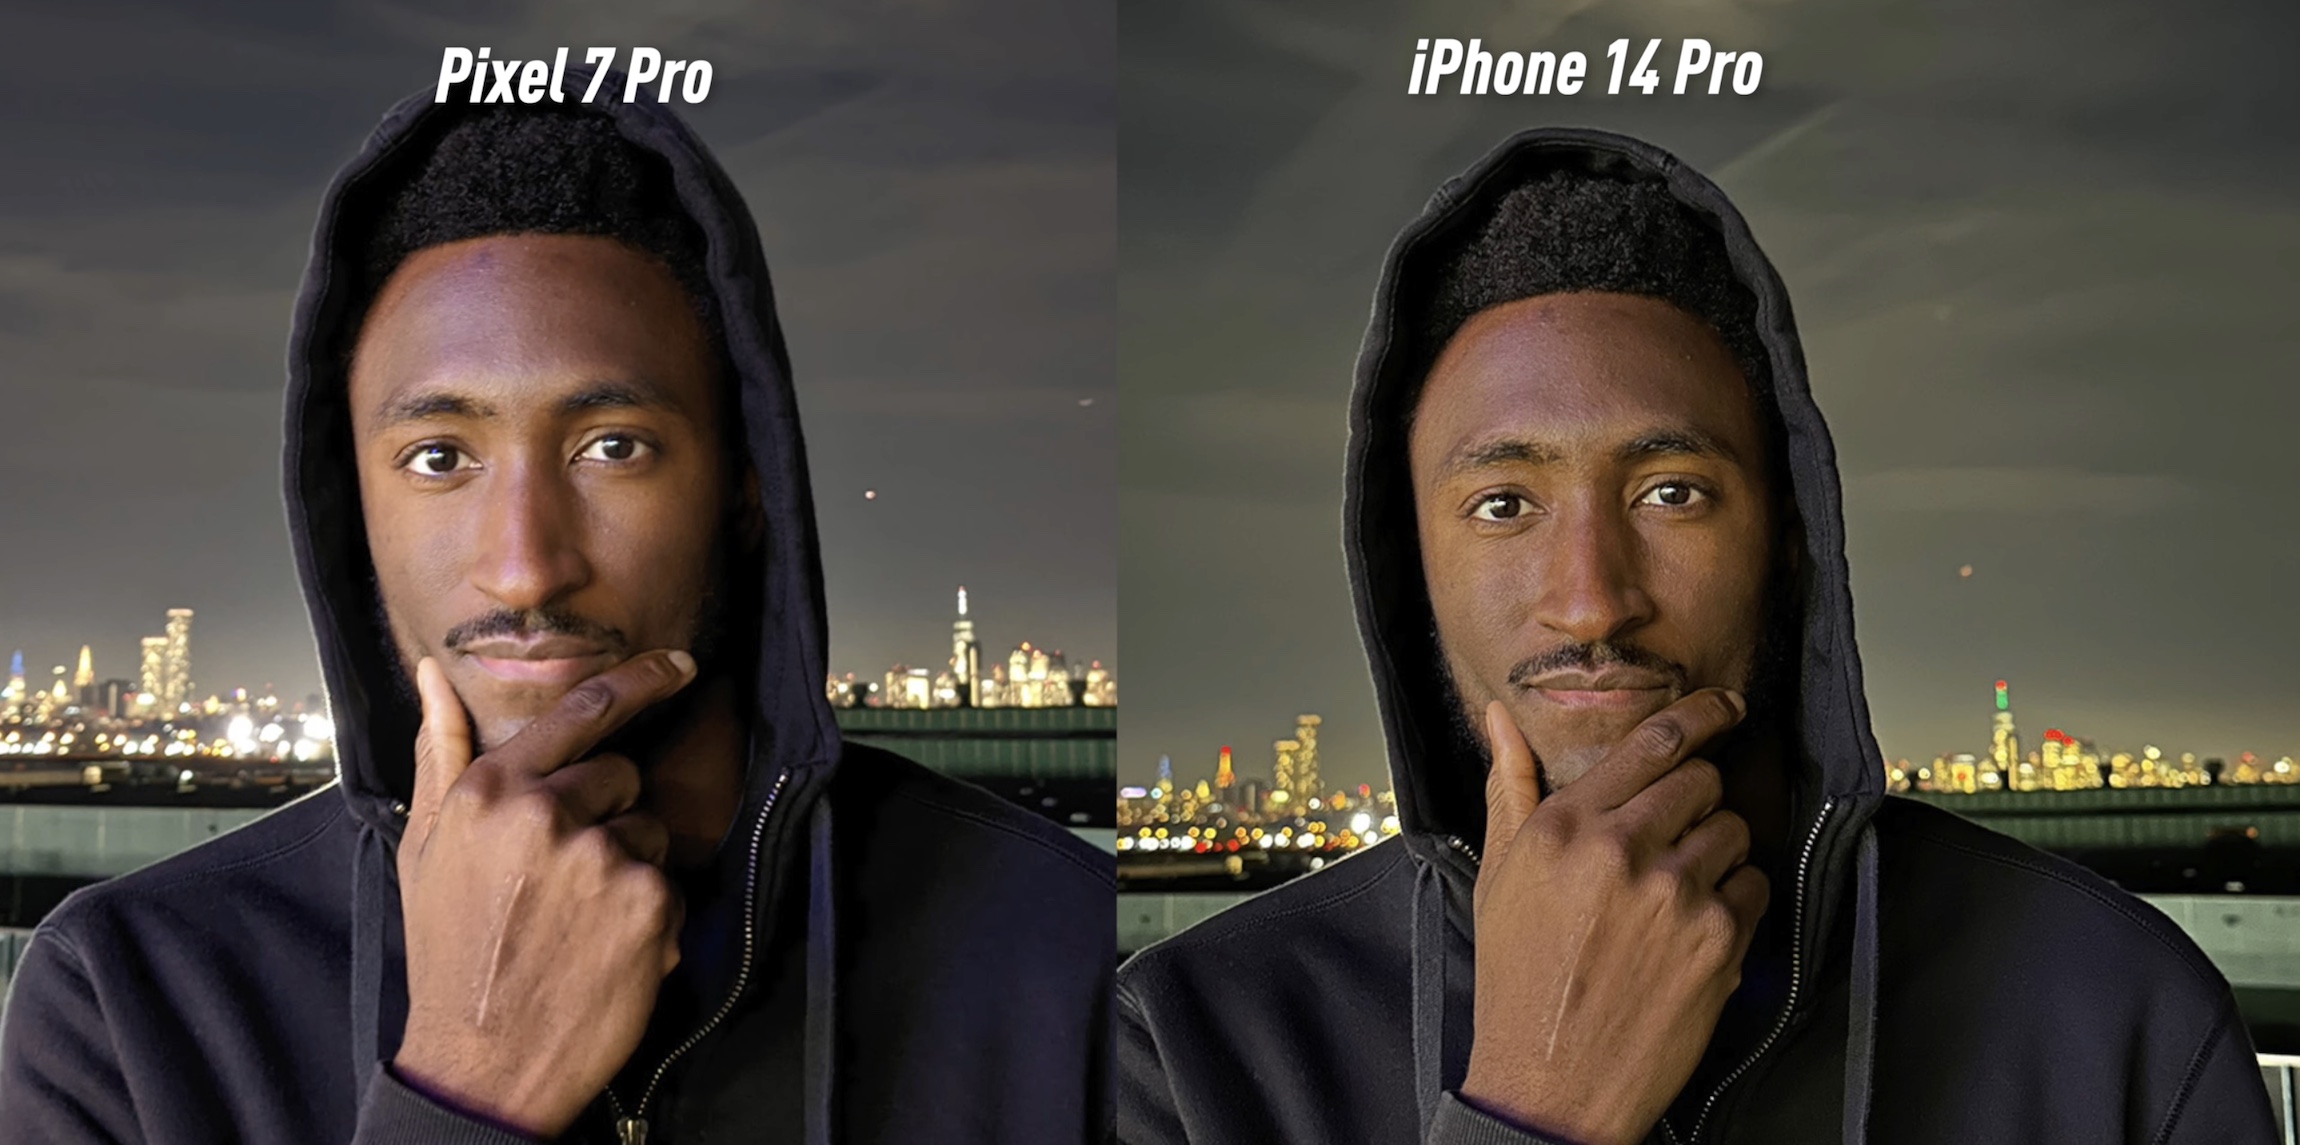 MKBHD afirma que o pós-processamento está arruinando as fotos do iPhone, e eu concordo com isso